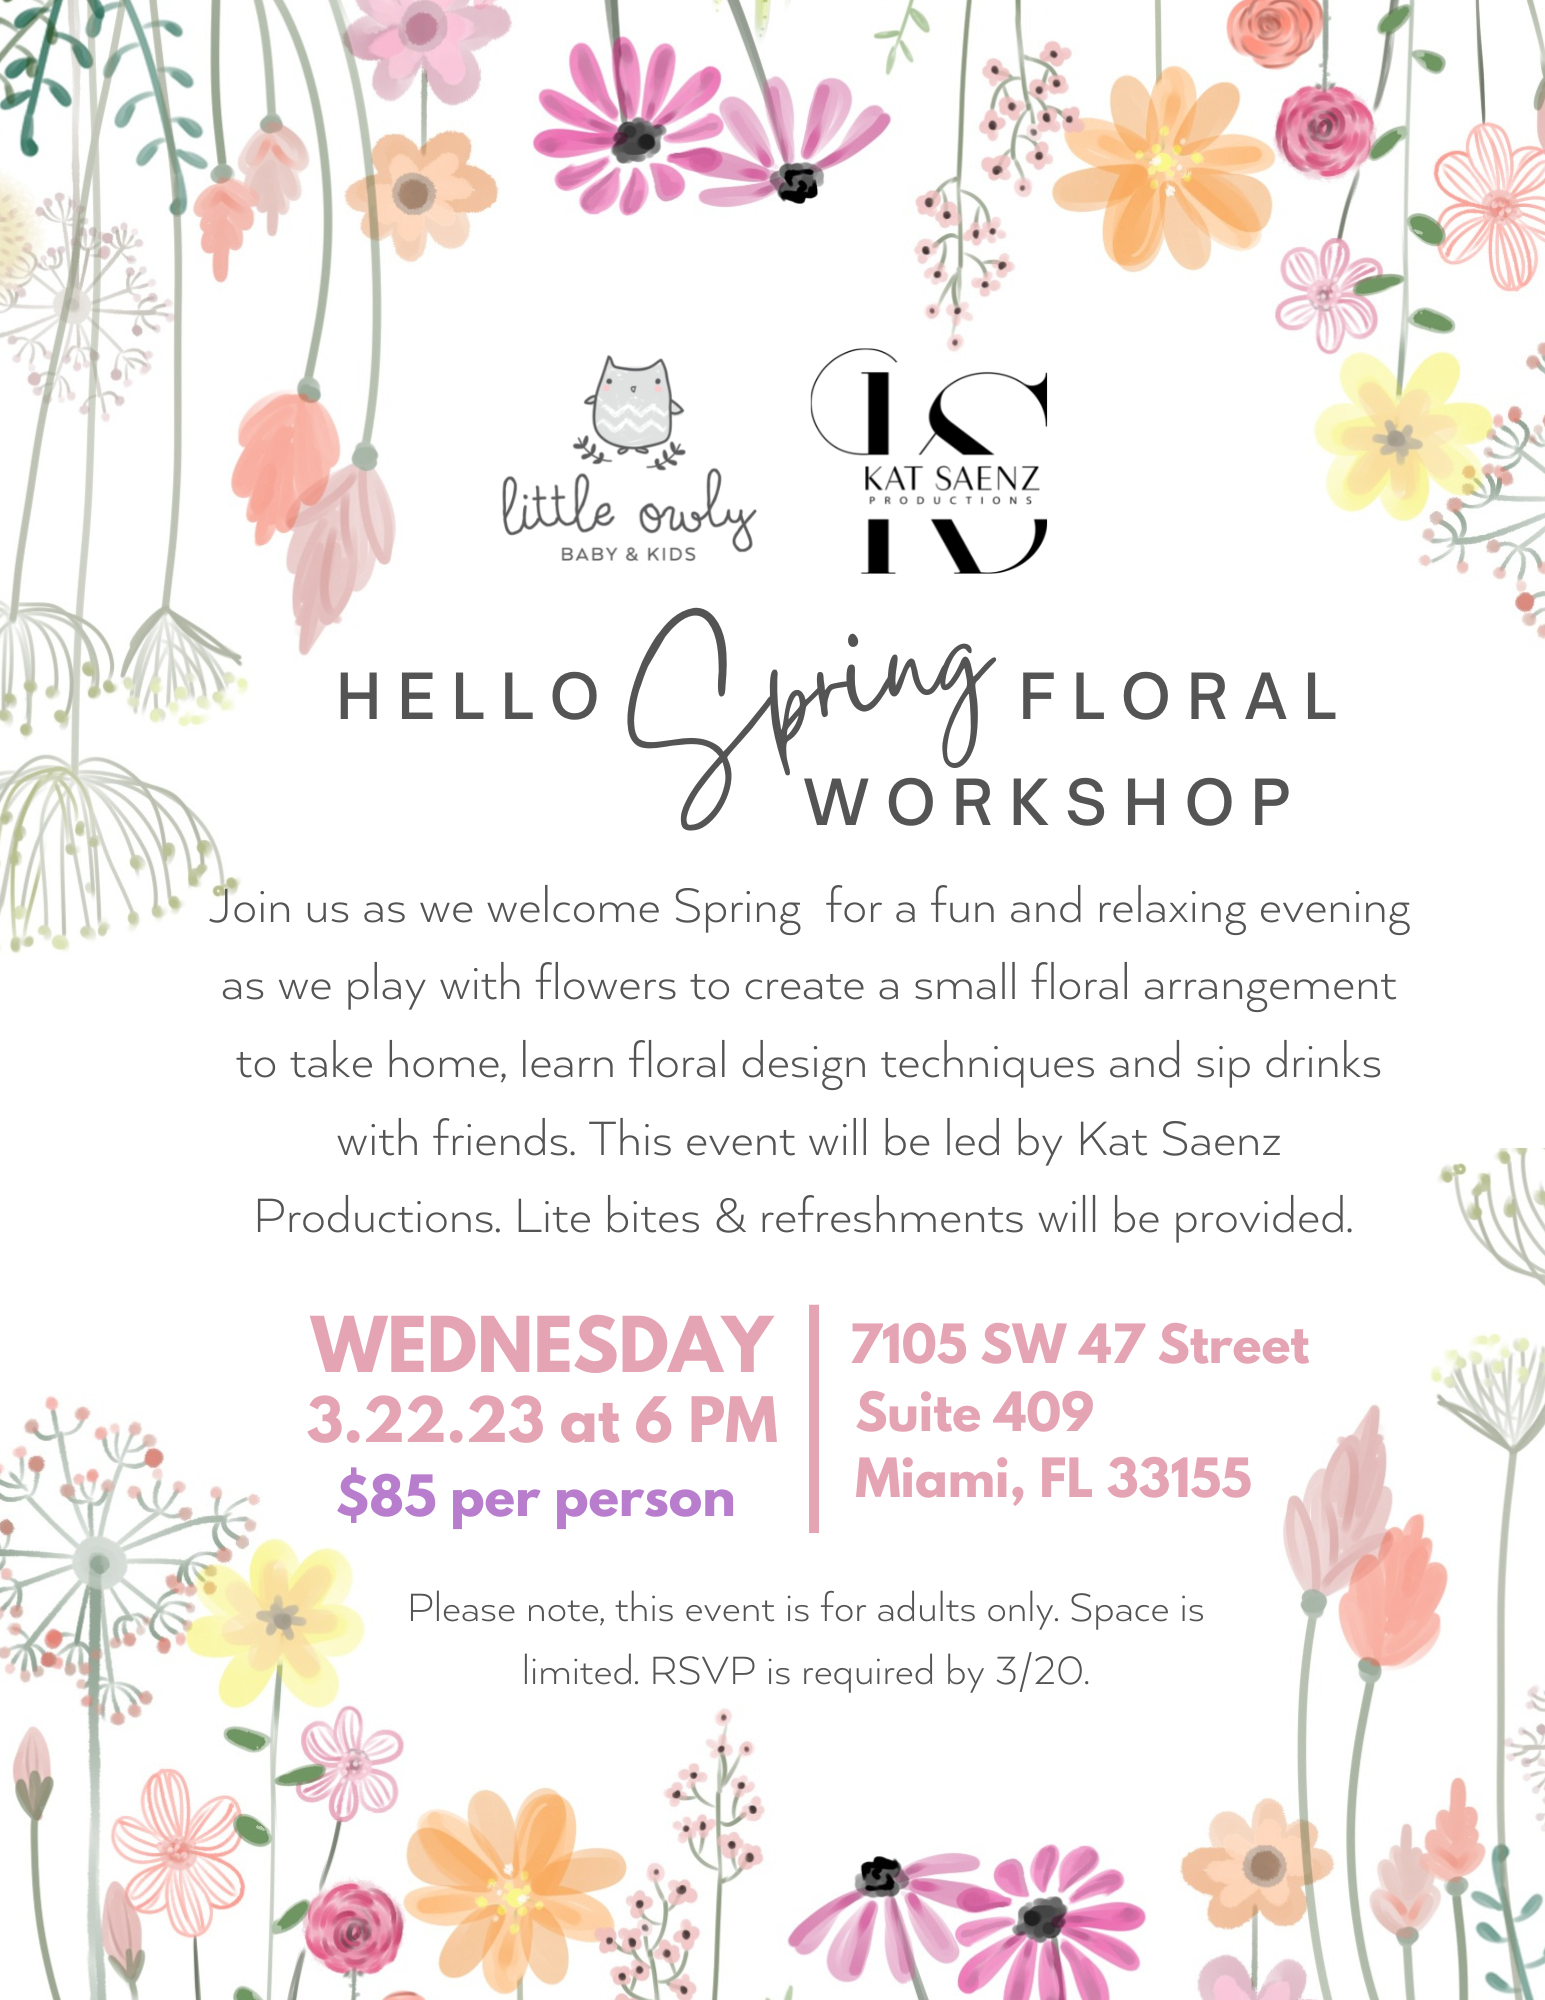 Hello, Spring Floral Workshop